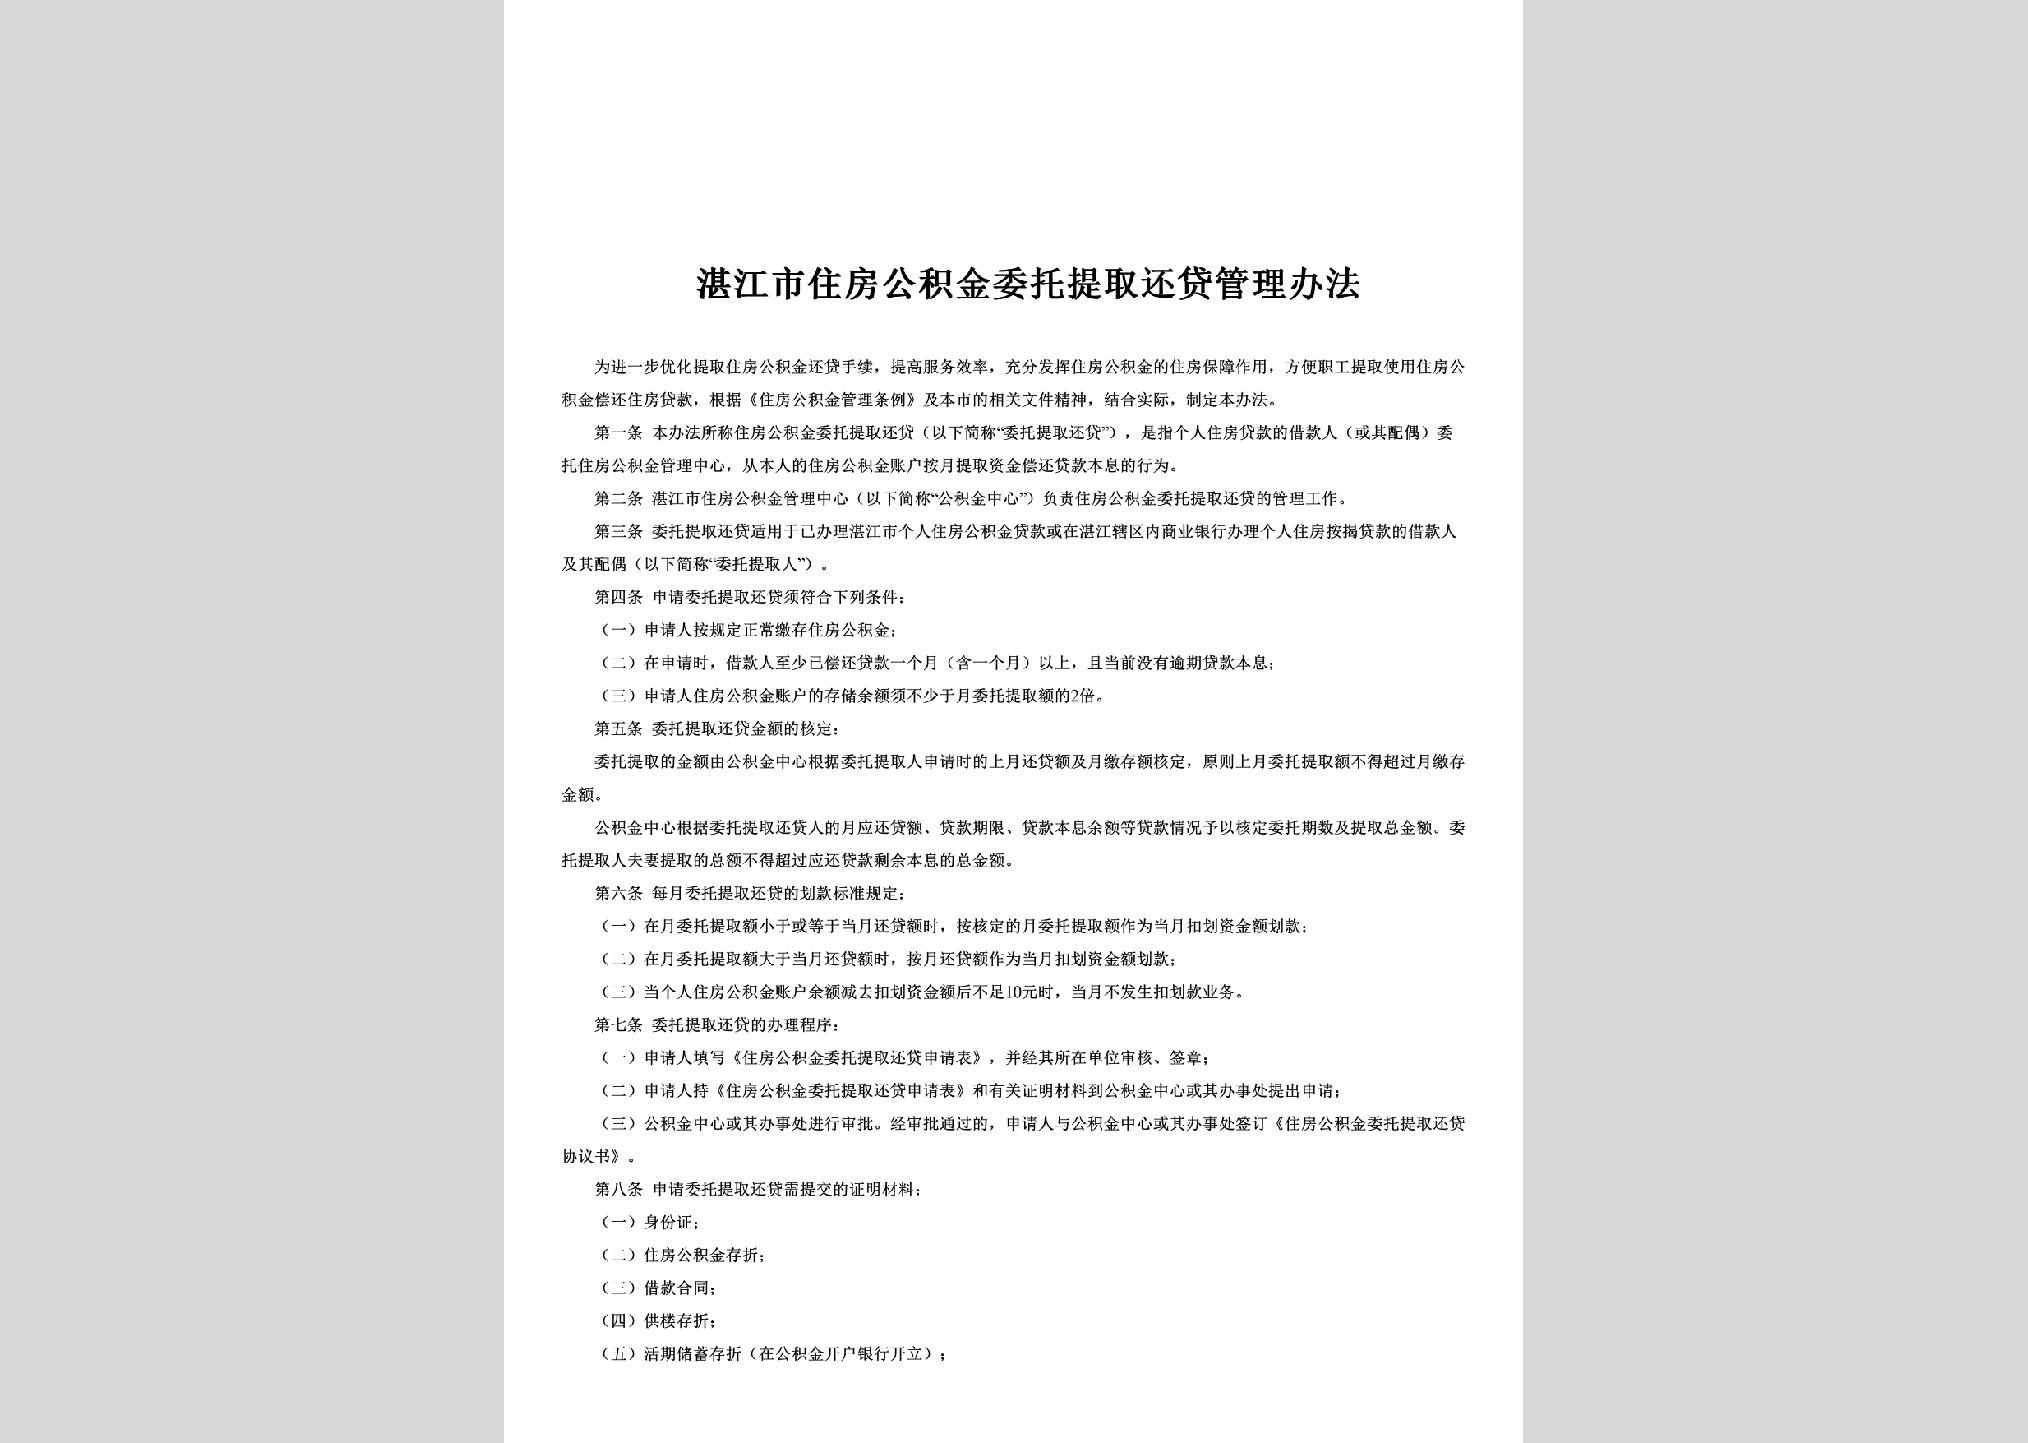 GD-ZFJJHDGL-2012：湛江市住房公积金委托提取还贷管理办法